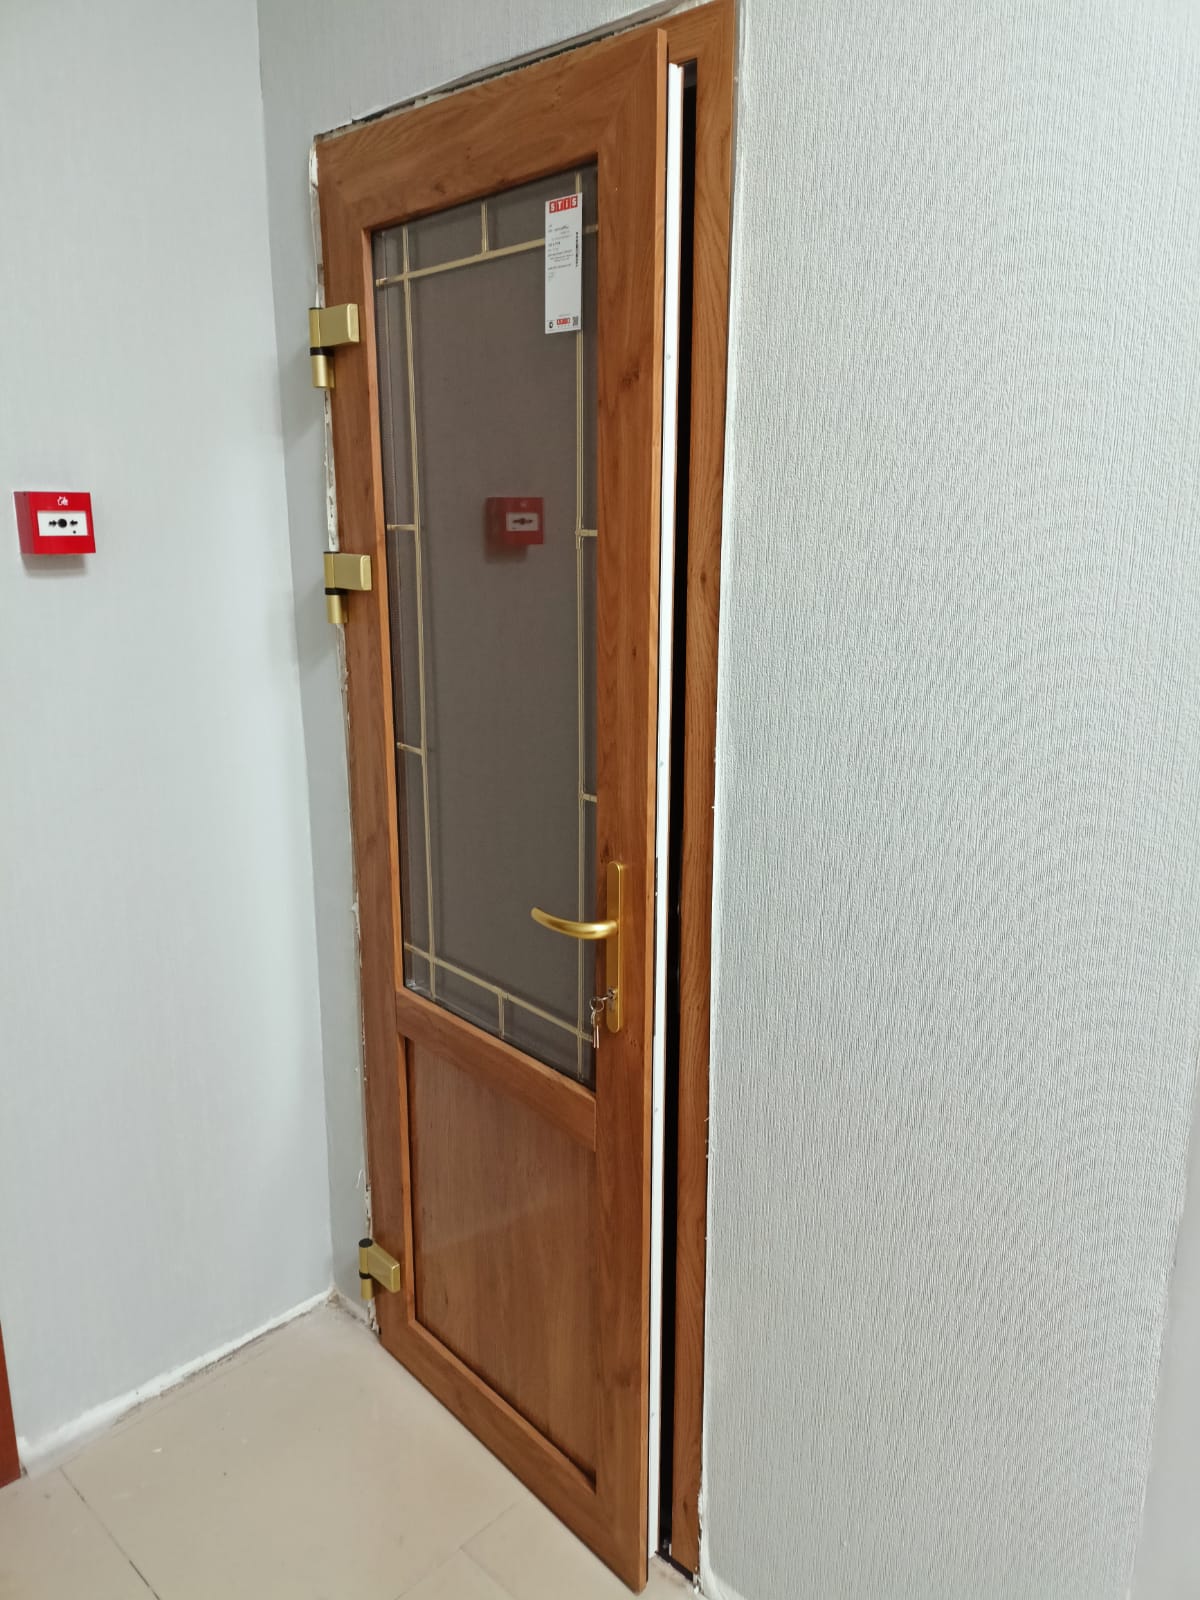 Межкомнатные двери Veka в офис в Москве от Satels в реутове +7 (902) 753-21-96. +7(495) 128-62-64